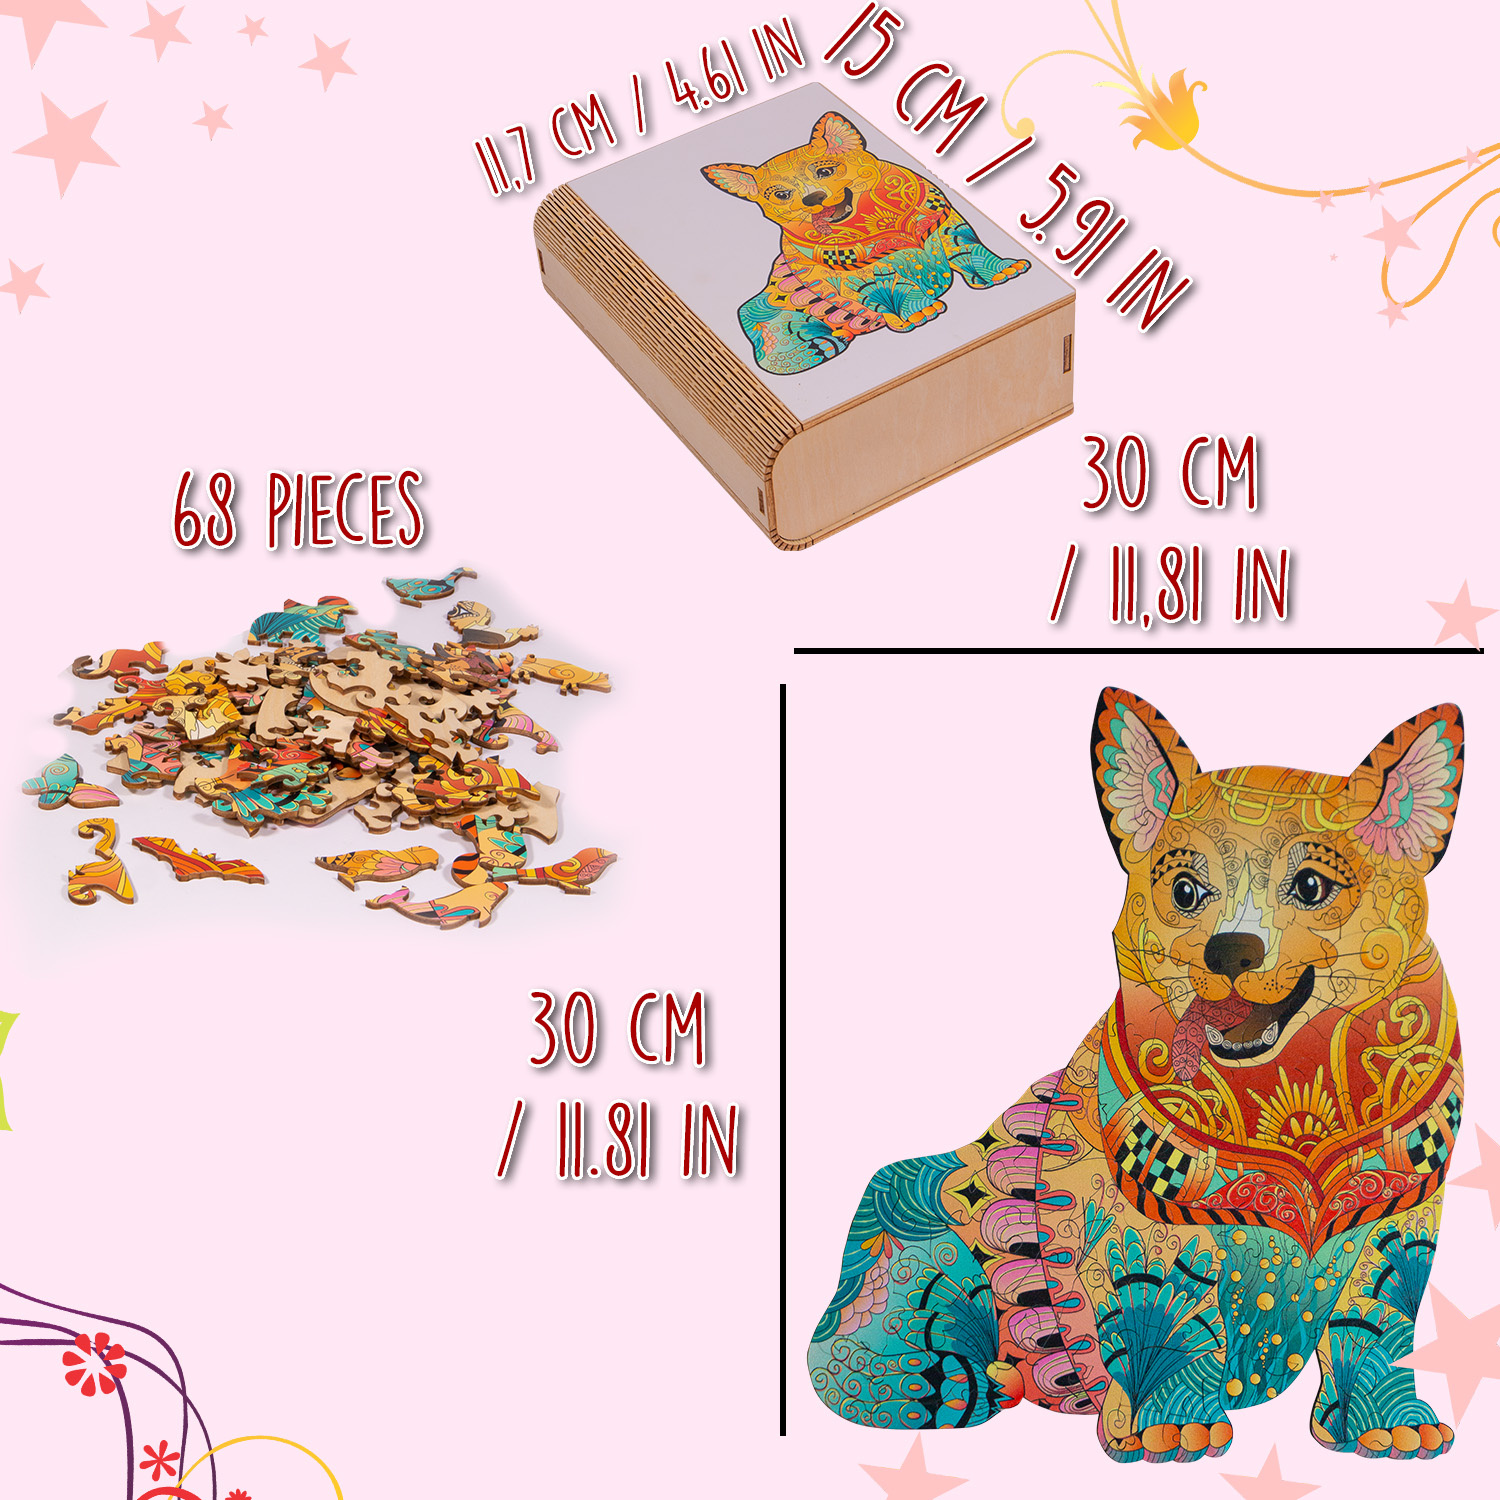 MagicWood Holzpuzzle für Erwachsene und Kinder, mit einzigartigen Tierform Puzzleteile, mit hochwertigem Geschenkbox aus Holz, als Geschenk zum Geburtstag, zur Einschulung, Holz Puzzle Hund, N002